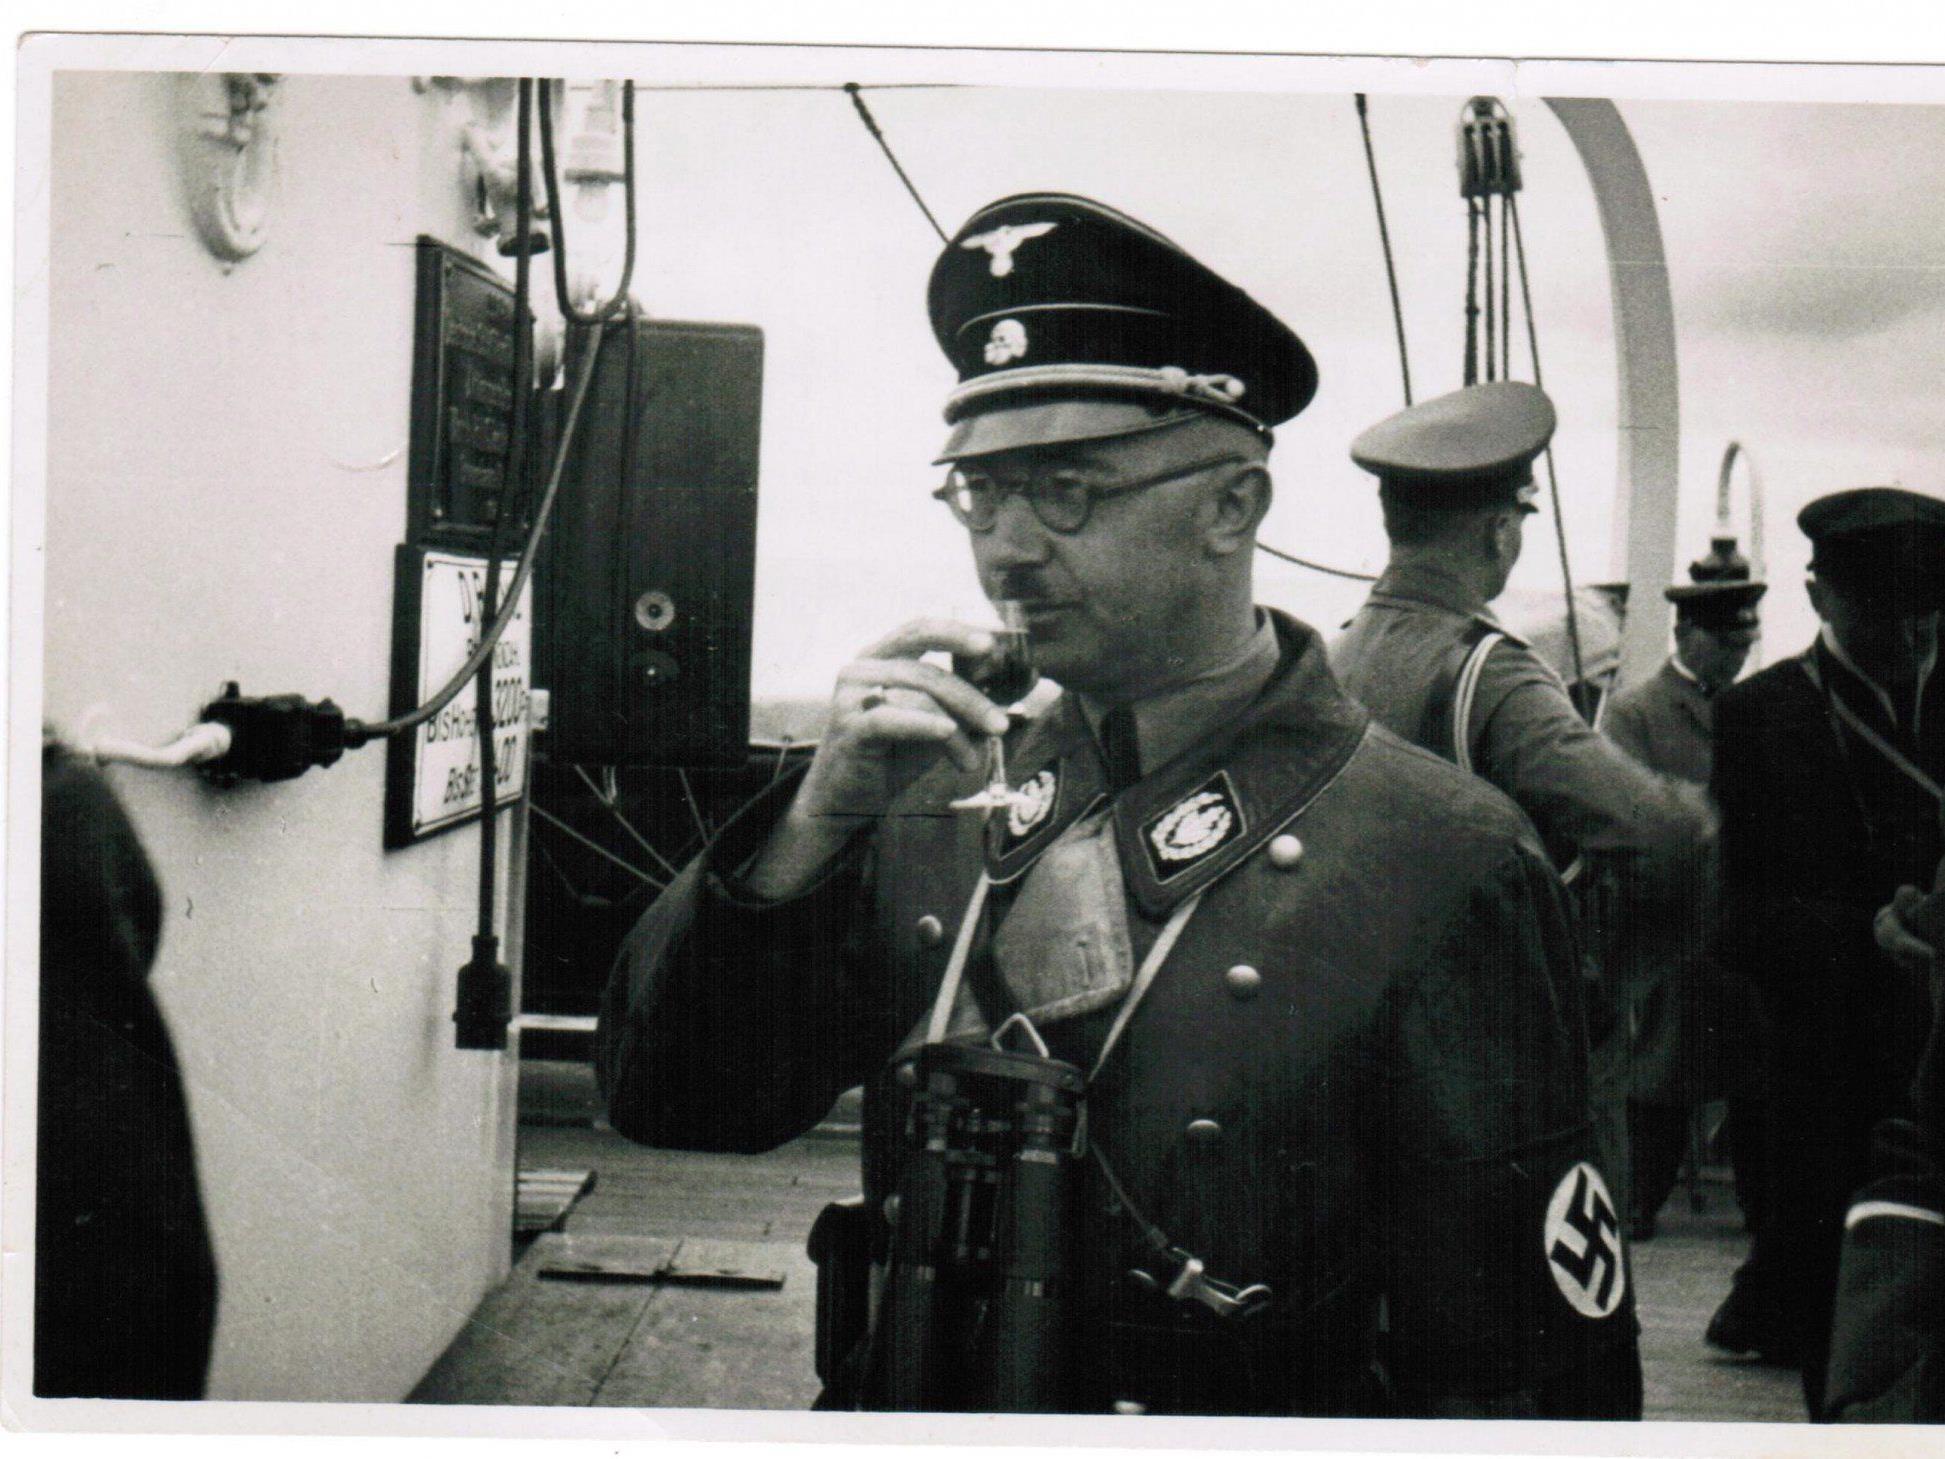 Himmlers Briefe stammen dem Bericht zufolge aus der Zeit von 1927 bis 1945.